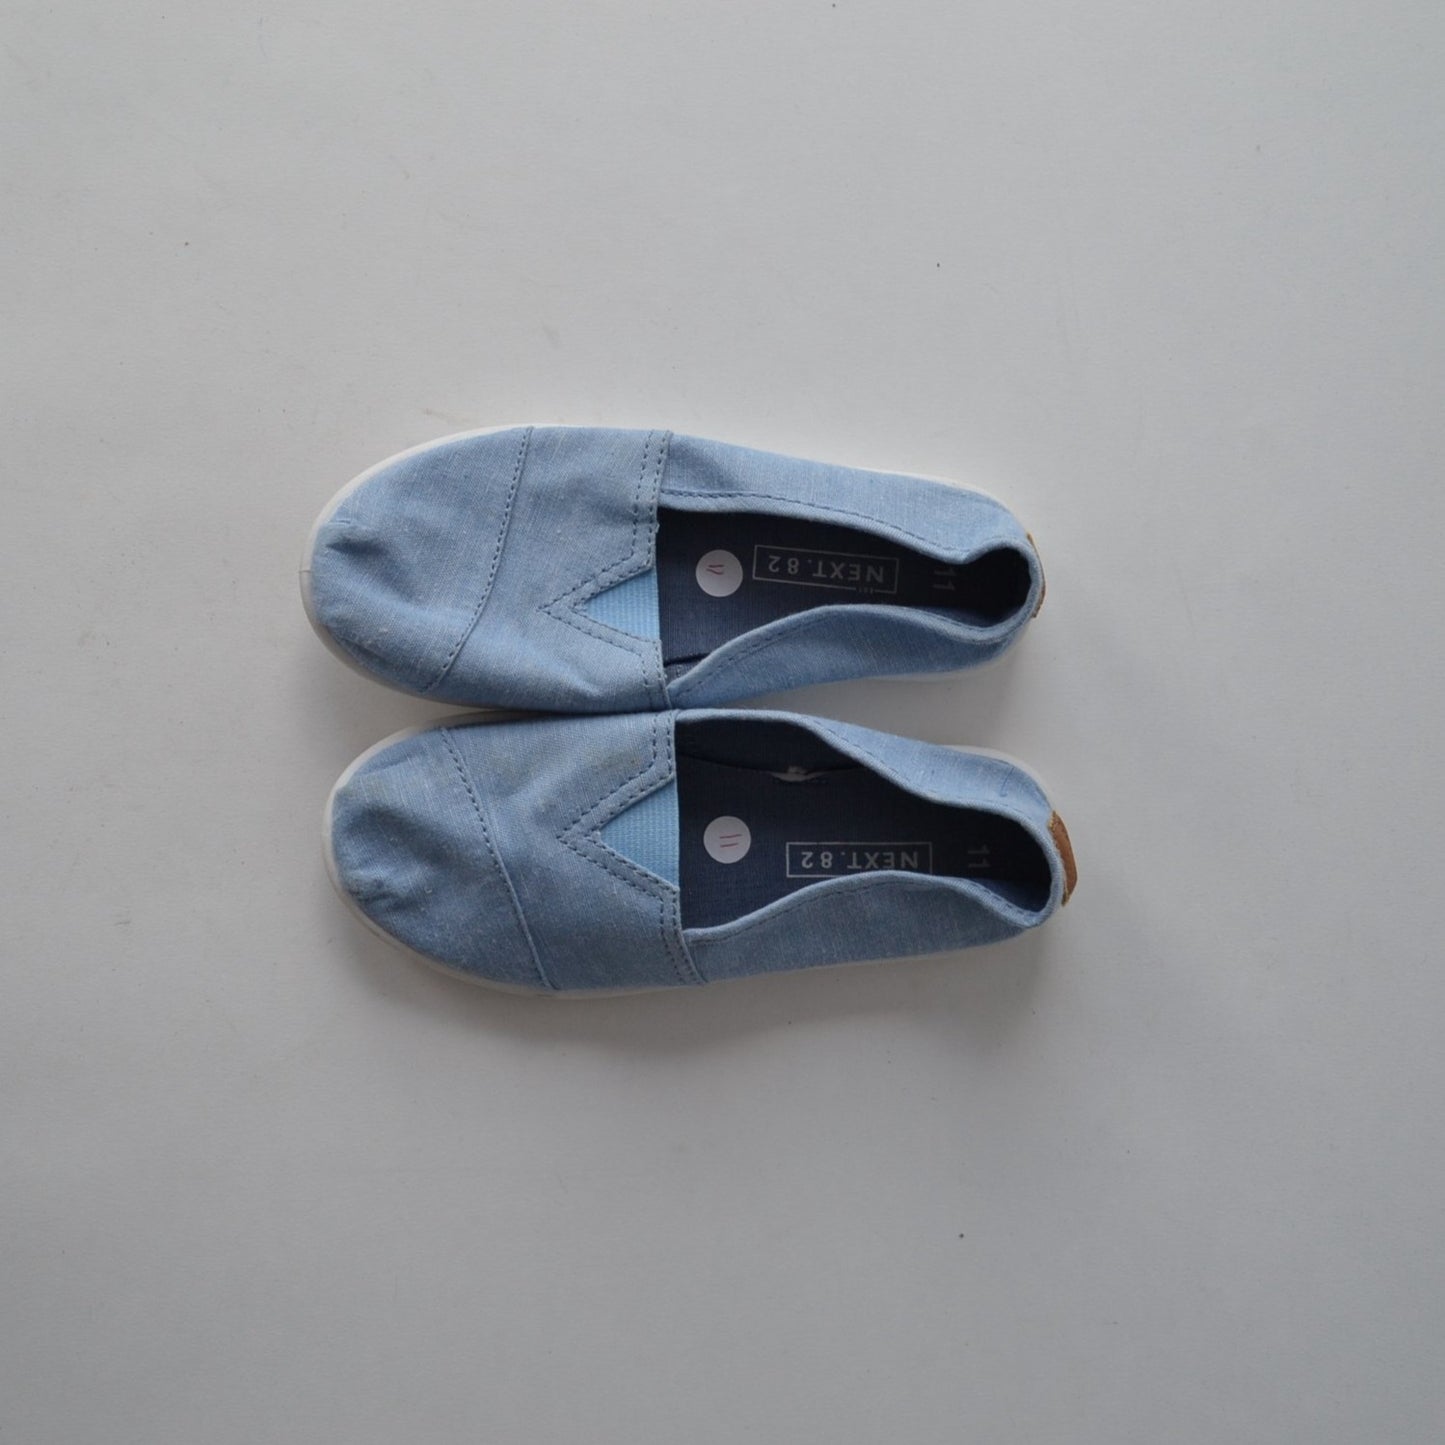 NEXT Light Blue Canvas Shoes Shoe Size 11 (jr)